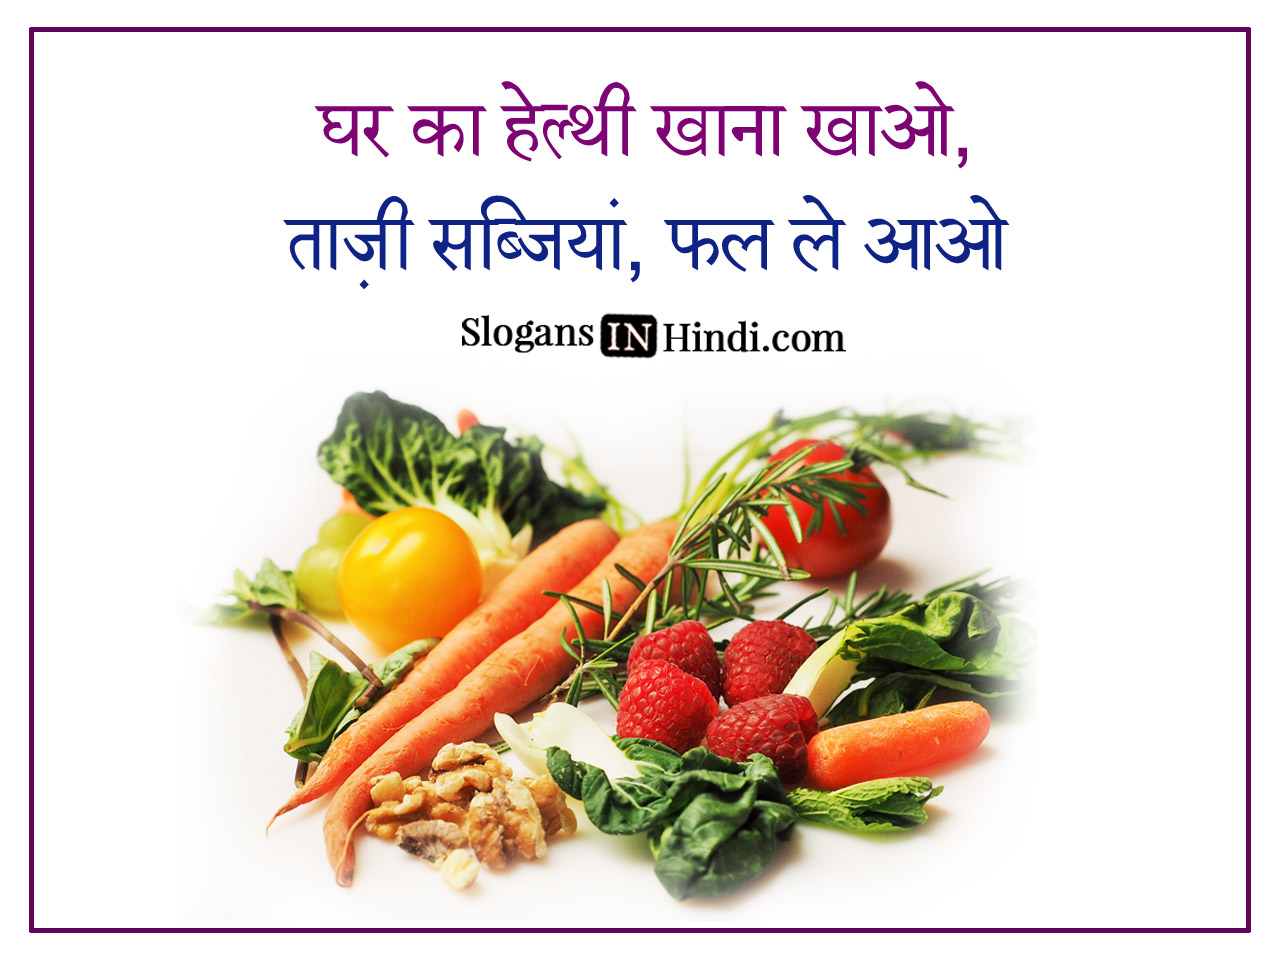 healthy food essay in hindi